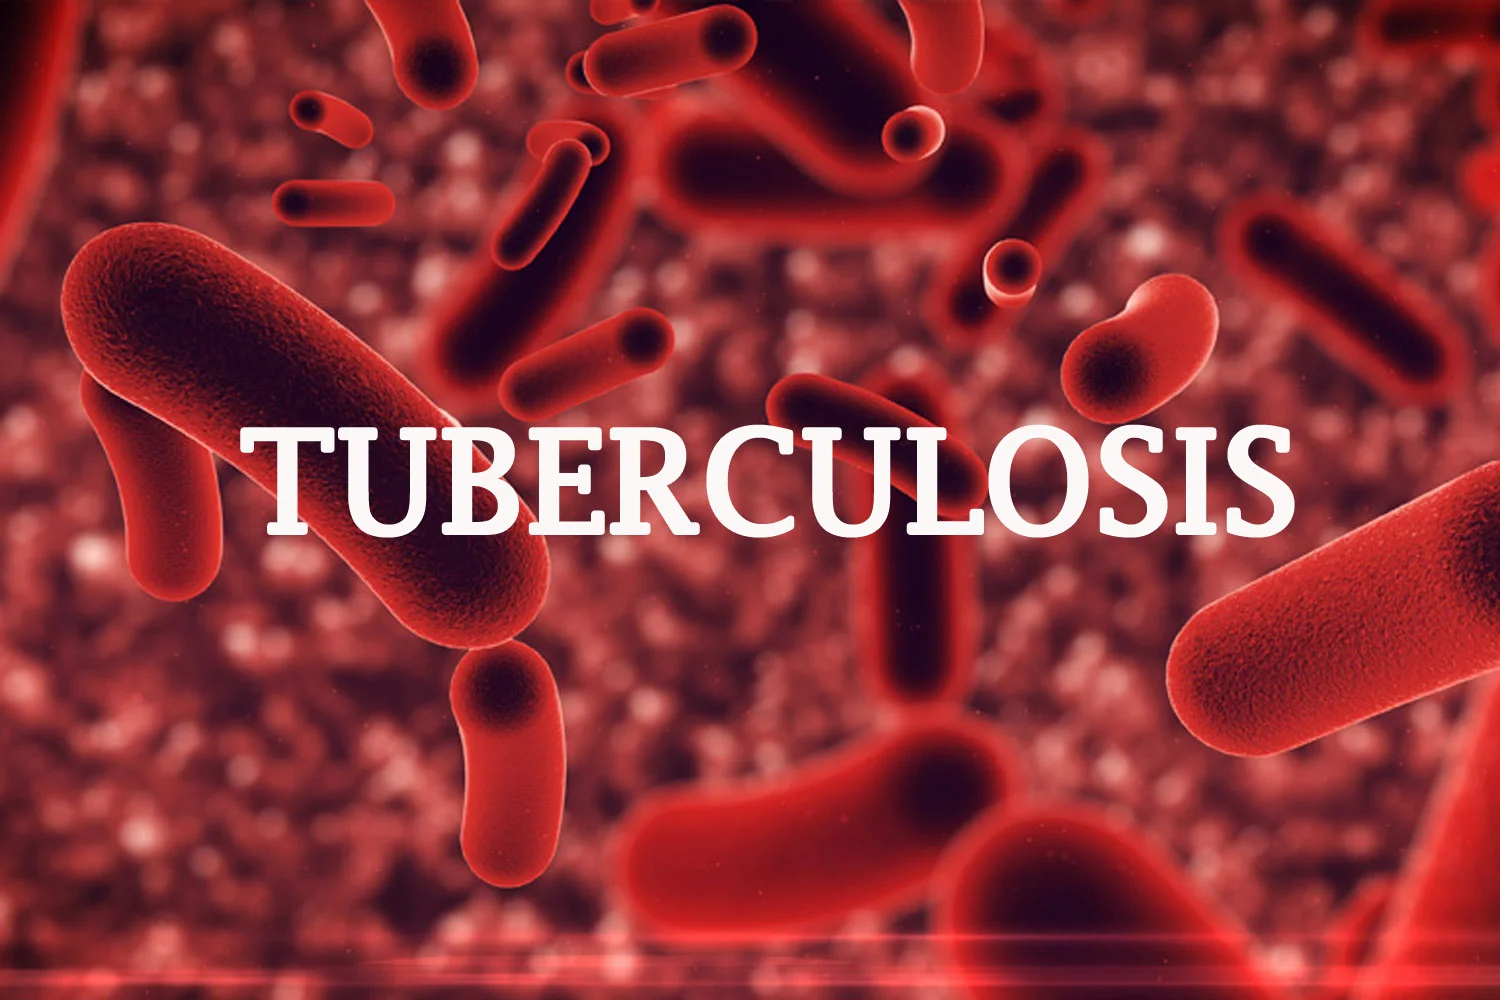 Tuberculosis: Institute raises alarm over high rate of death in Ogun